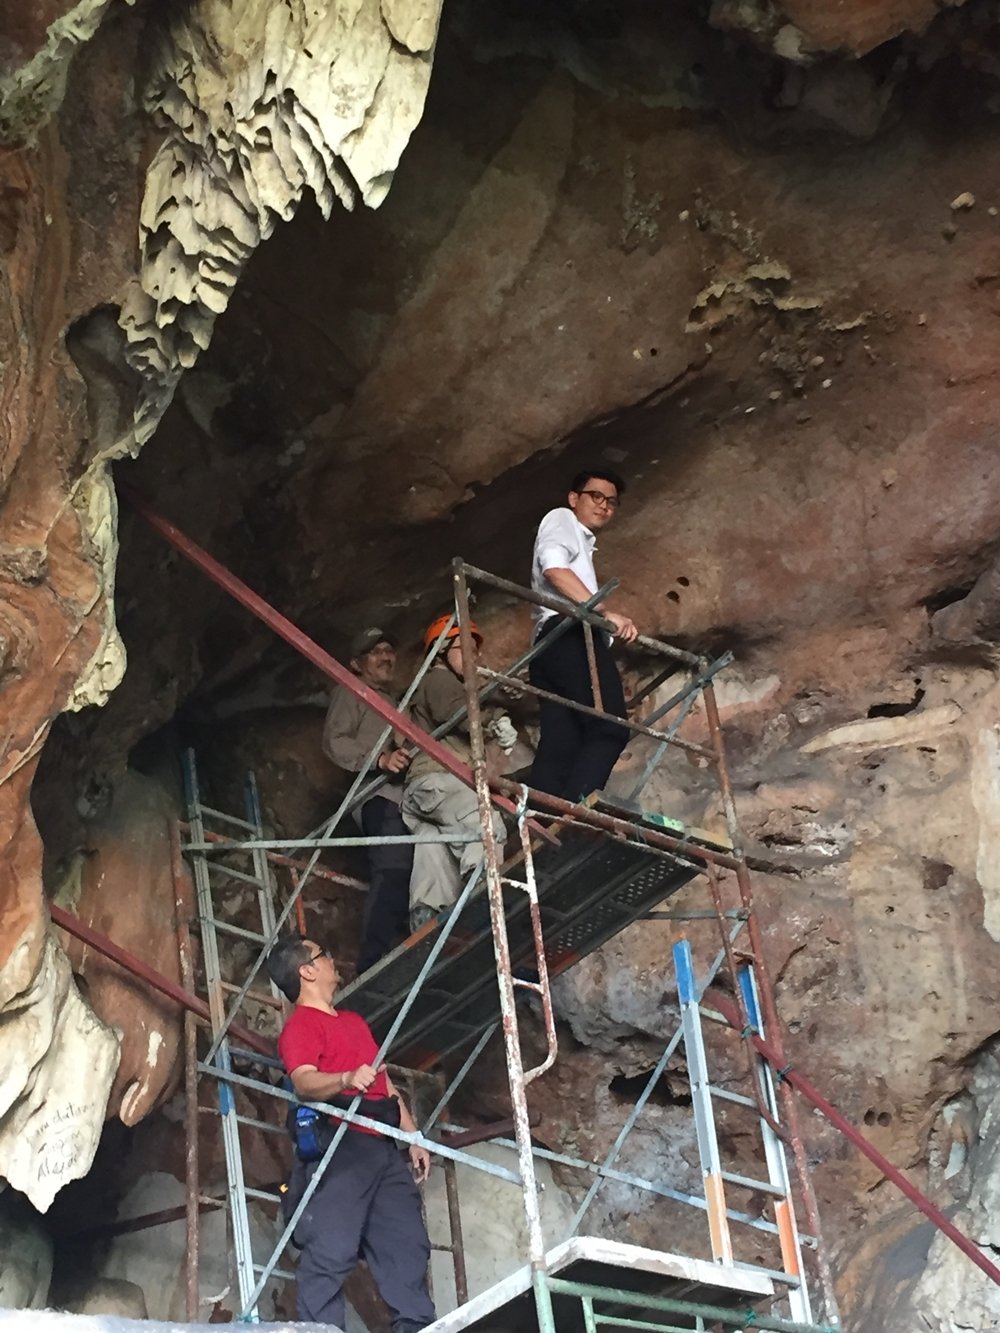 陈家兴攀上鹰架，近距离观察洞壁上的老虎化石（白色部分）。